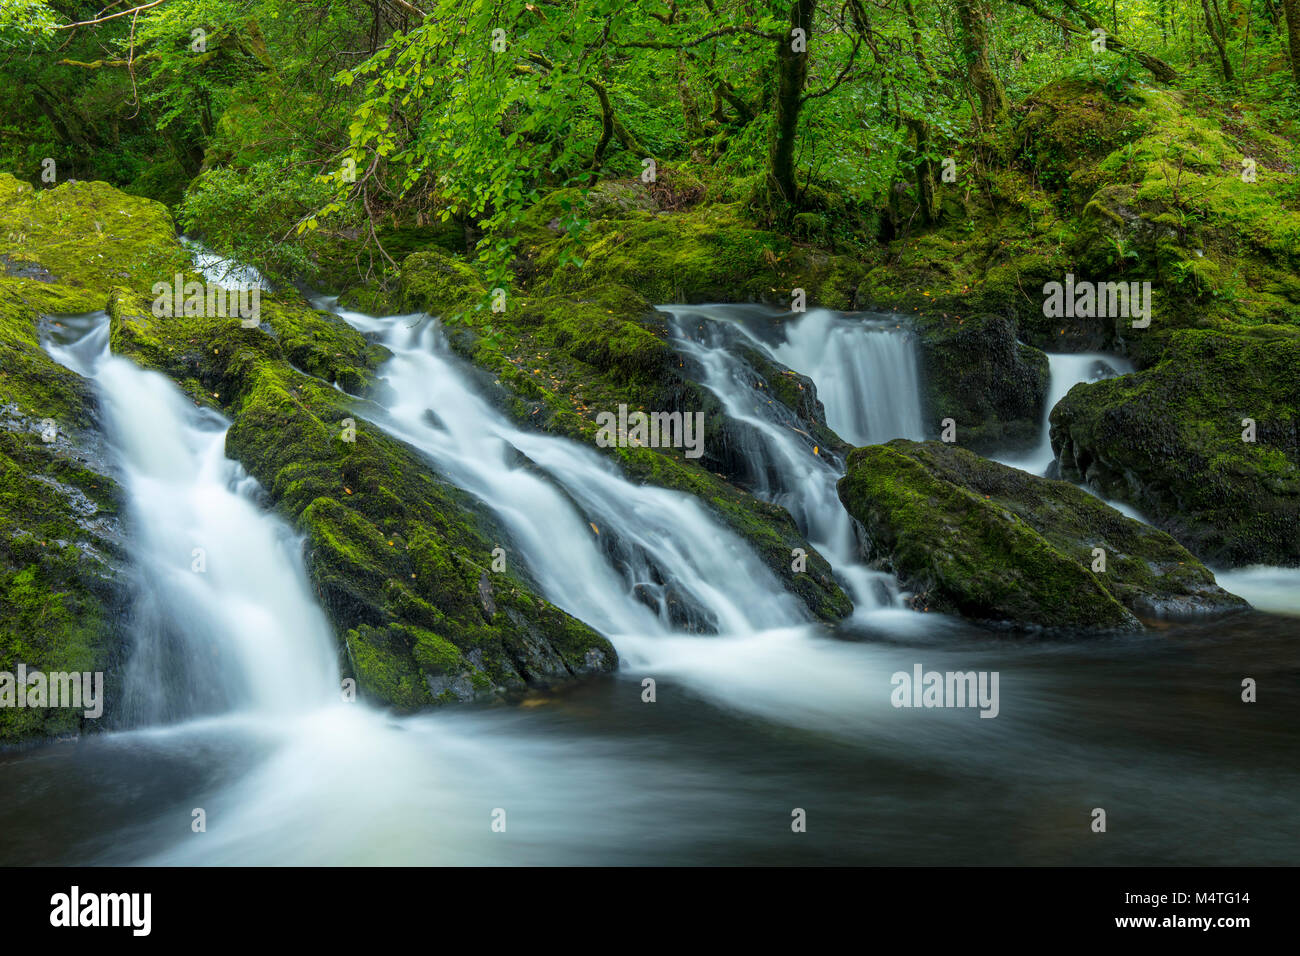 Sur le Canrooska cascade River, Glengarriff Réserve Naturelle, Glengarriff, comté de Cork, Irlande. Banque D'Images